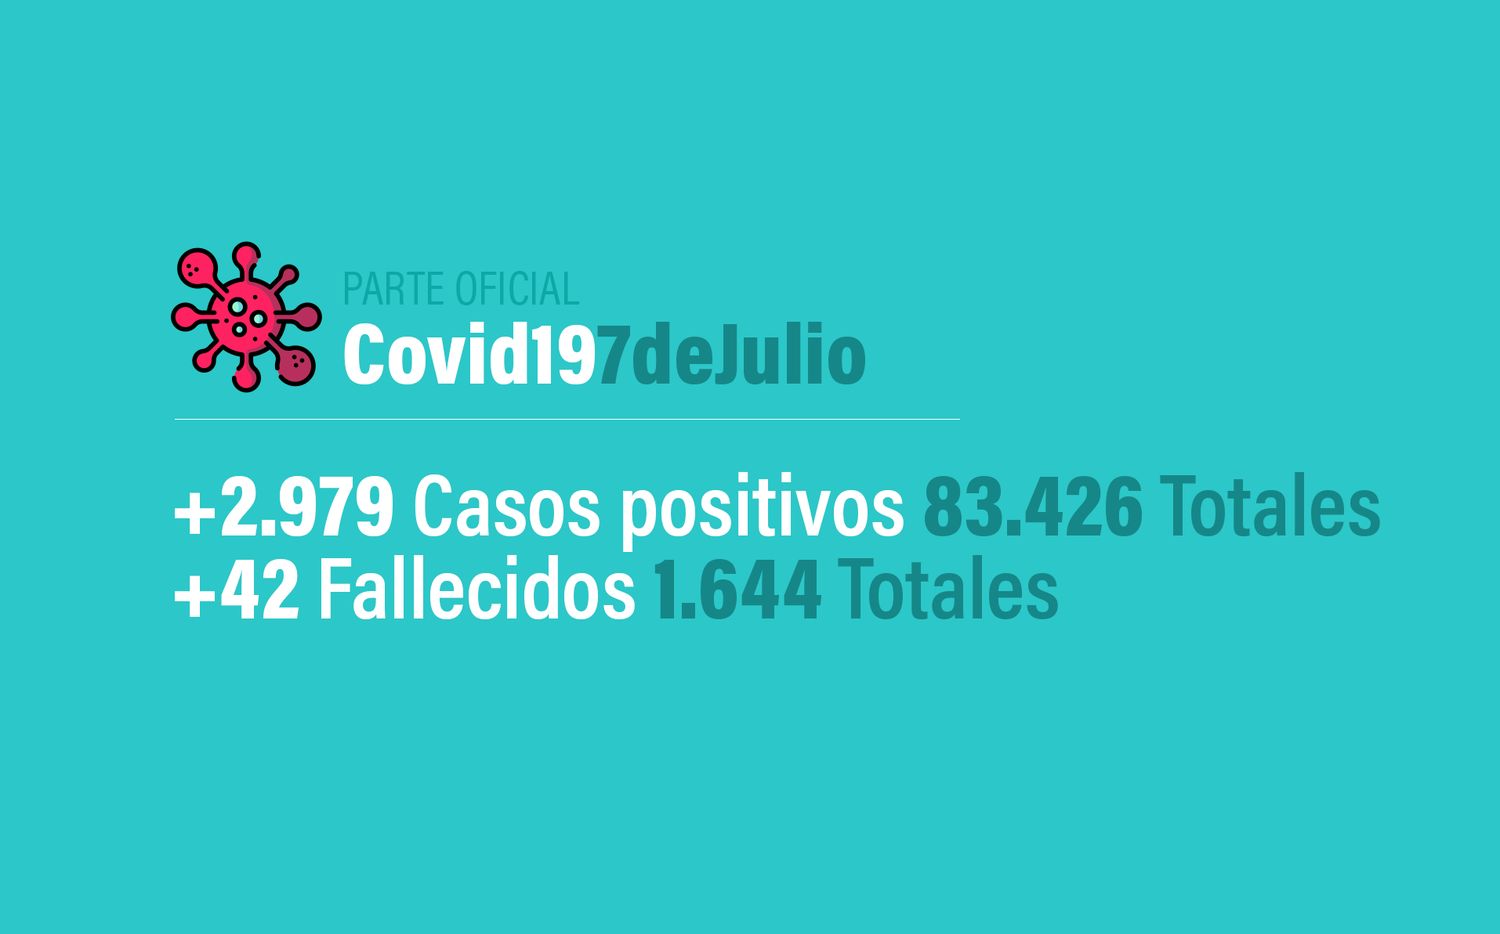 Coronavirus en Argentina: 2979 nuevos casos, 83426 confirmados, 30095 recuperados y 1644 muertes, al 7 de julio